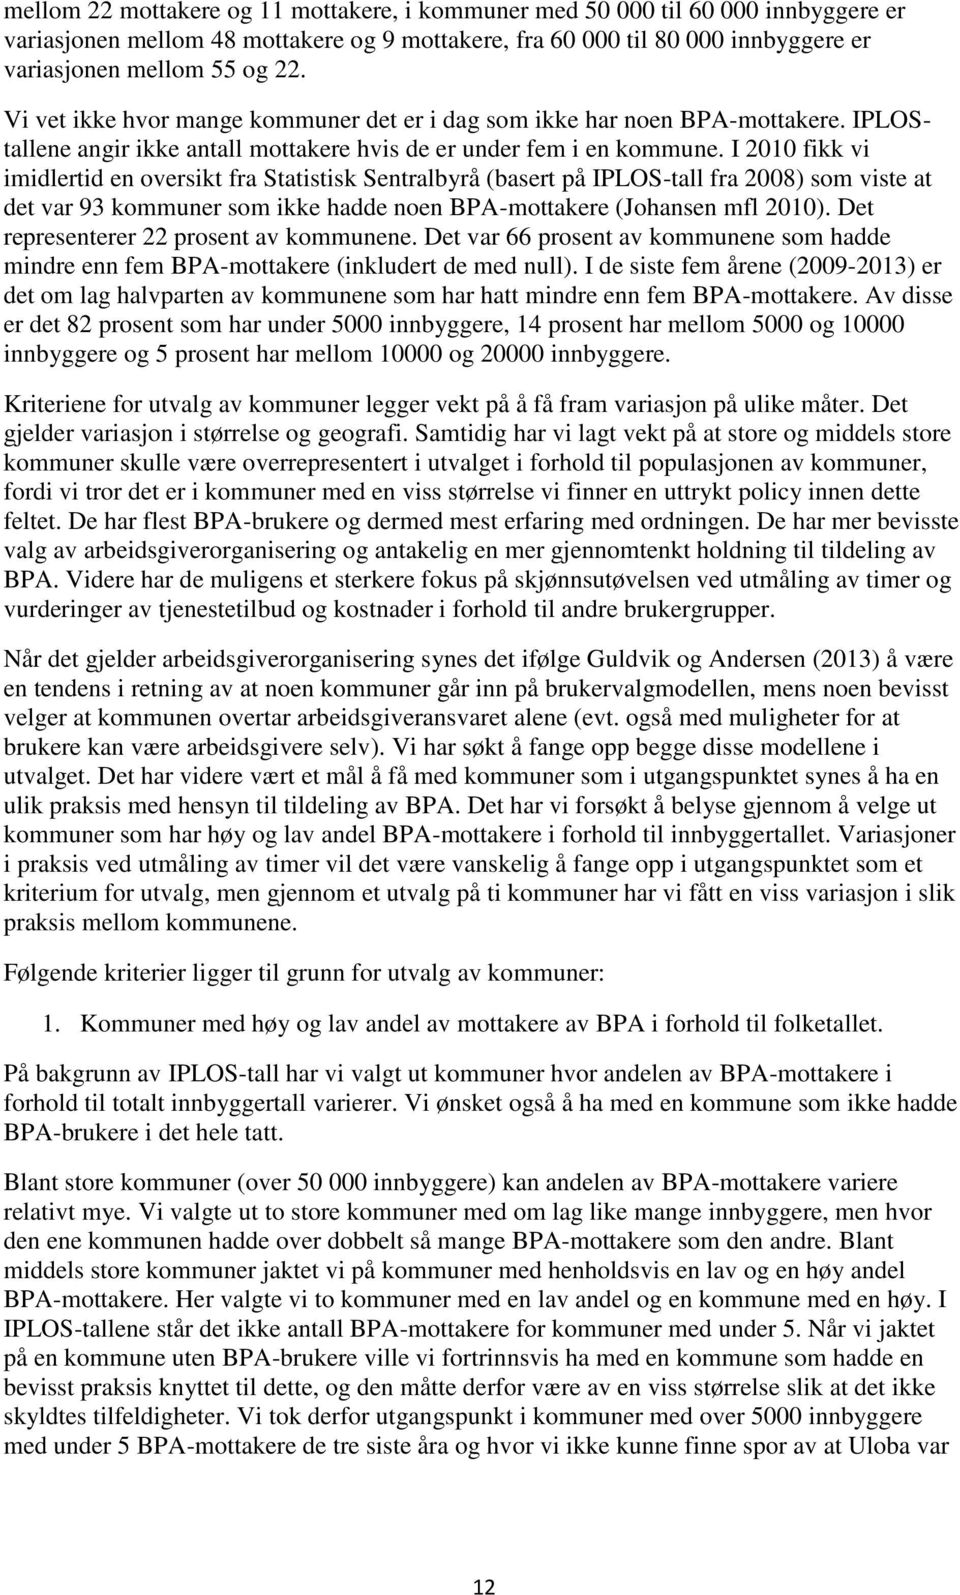 I 2010 fikk vi imidlertid en oversikt fra Statistisk Sentralbyrå (basert på IPLOS-tall fra 2008) som viste at det var 93 kommuner som ikke hadde noen BPA-mottakere (Johansen mfl 2010).